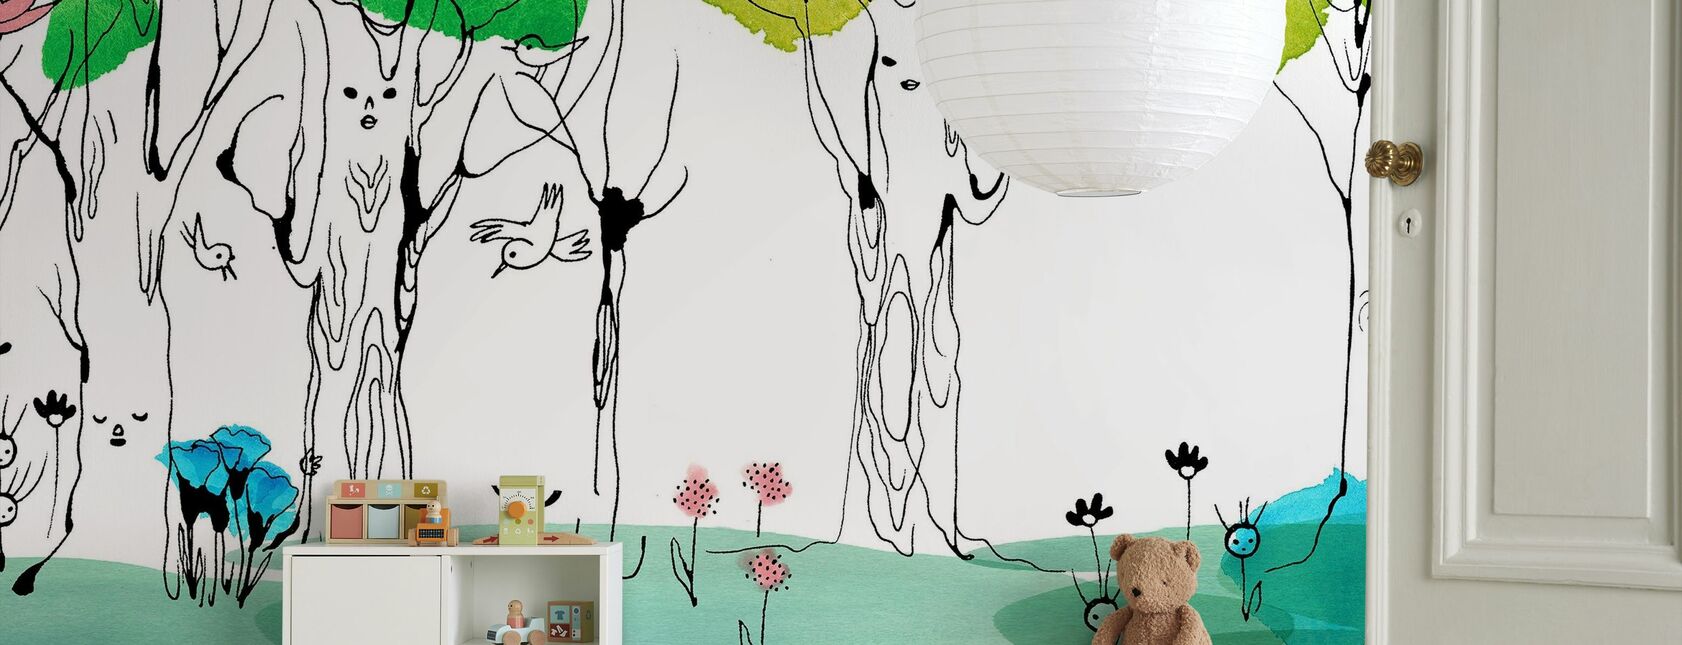 Whispering Tree - Wallpaper - Kids Room